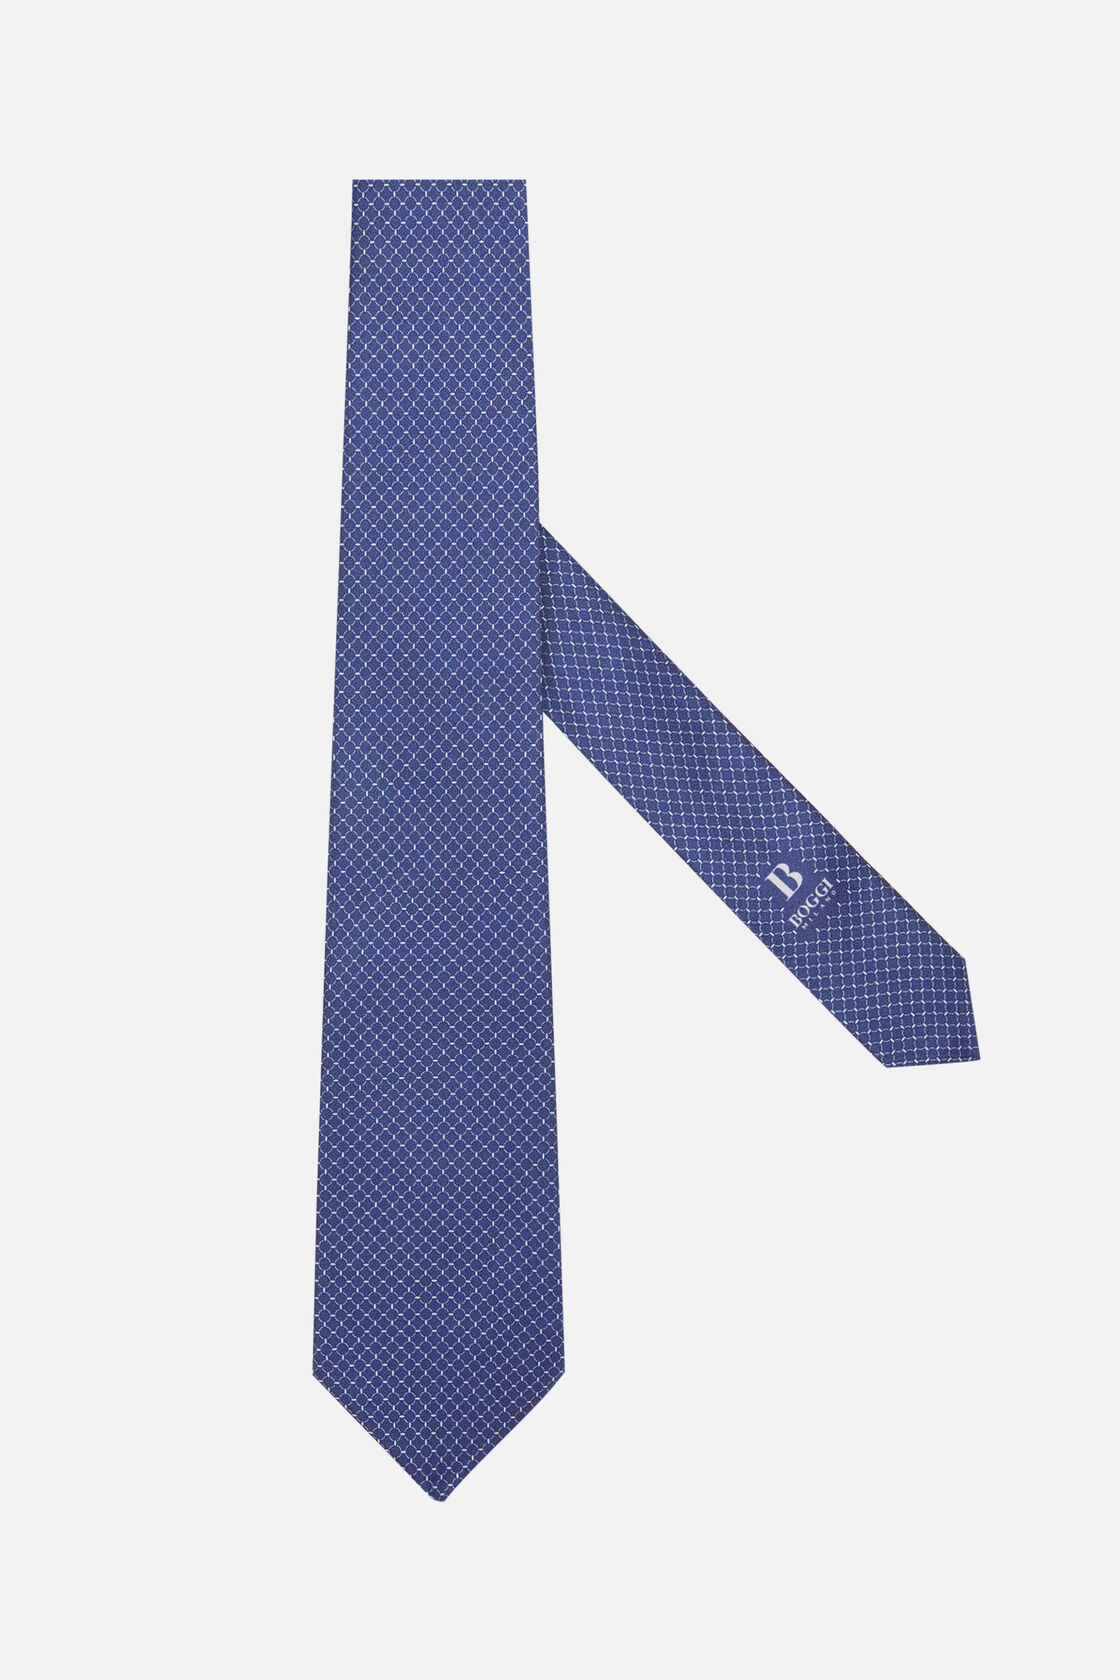 Wzorzysty krawat jedwabny, Navy blue, hi-res